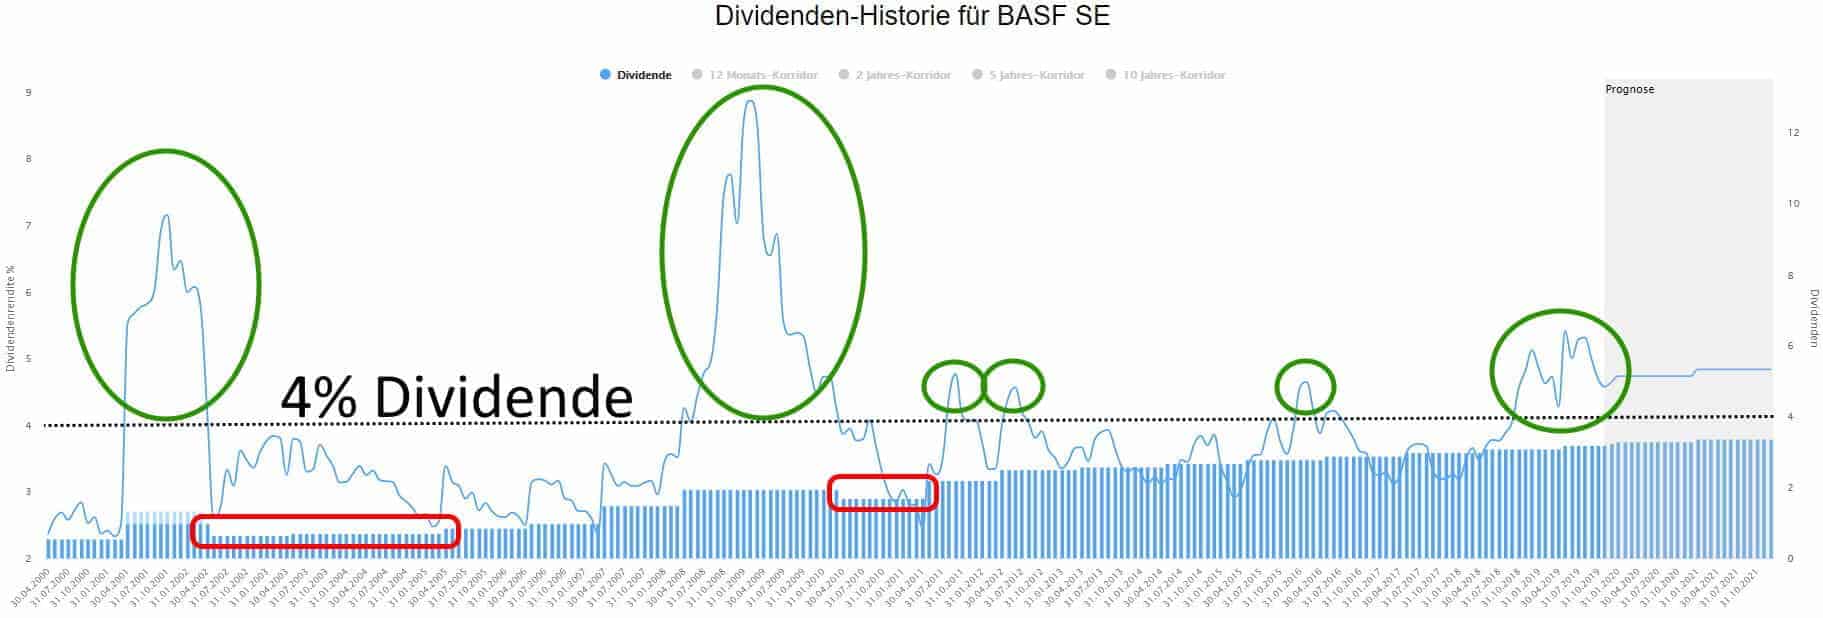 BASF Aktie historische Dividendenrenditen